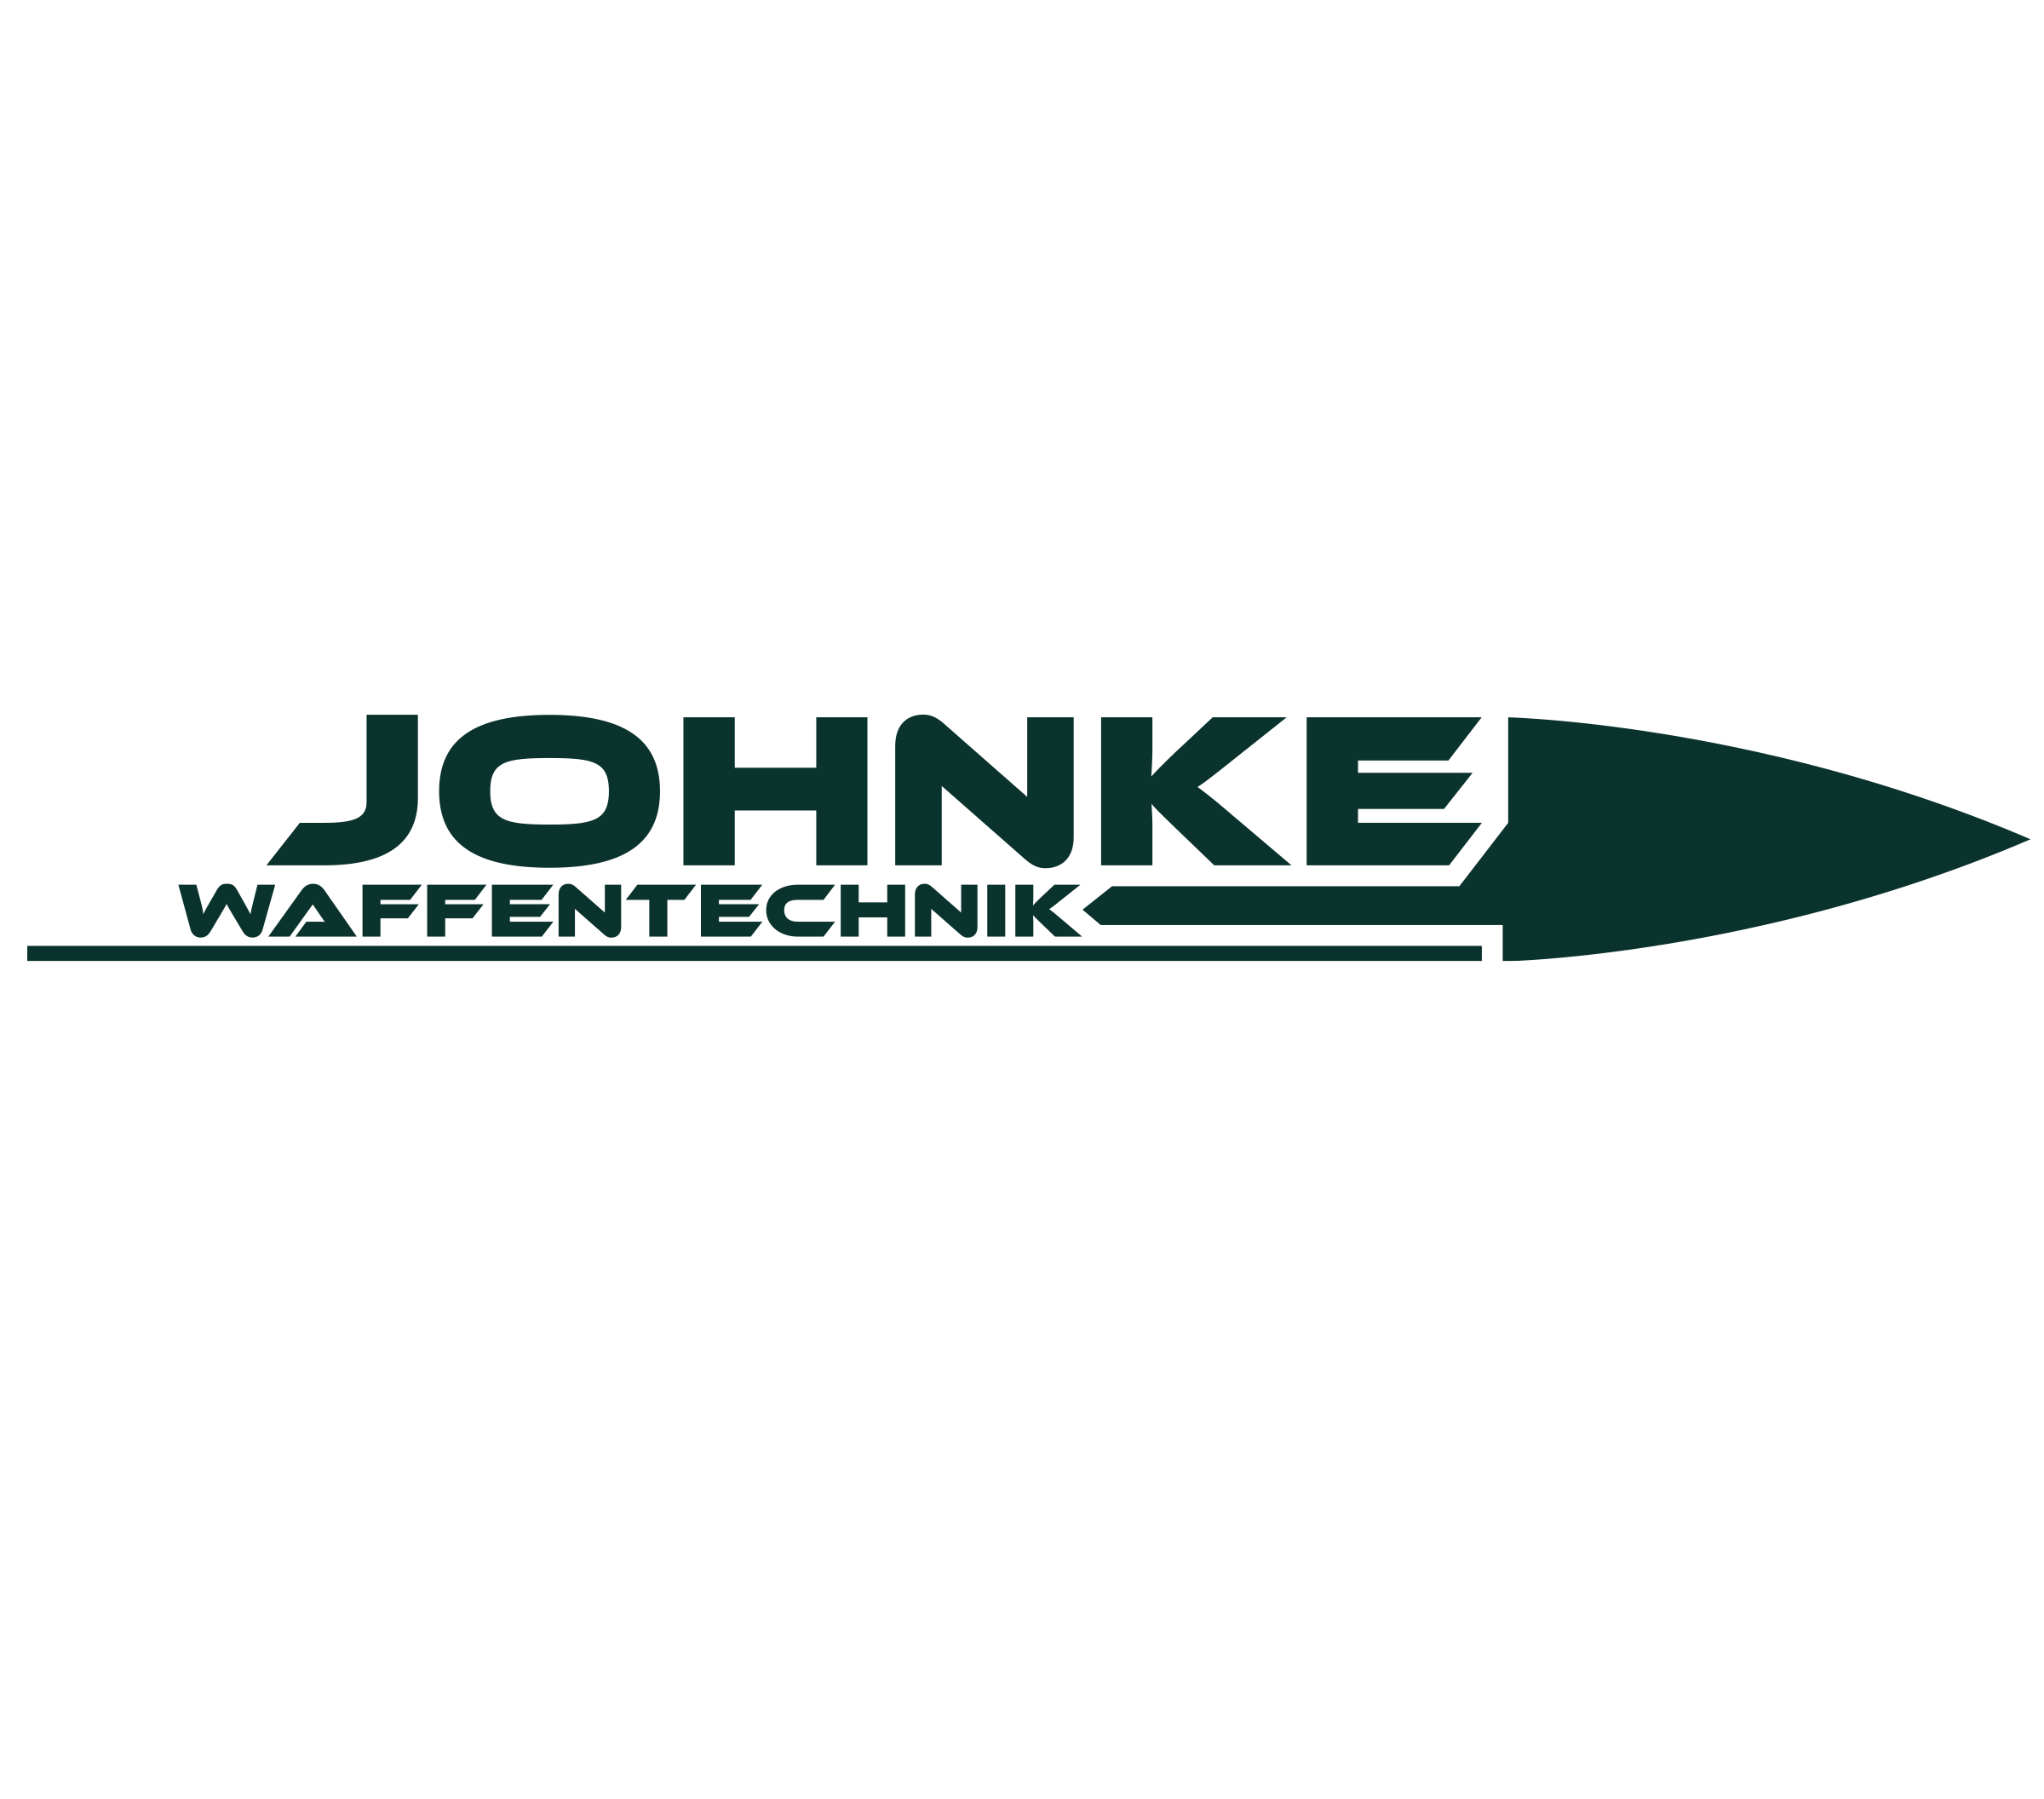 Johnke Waffentechnik